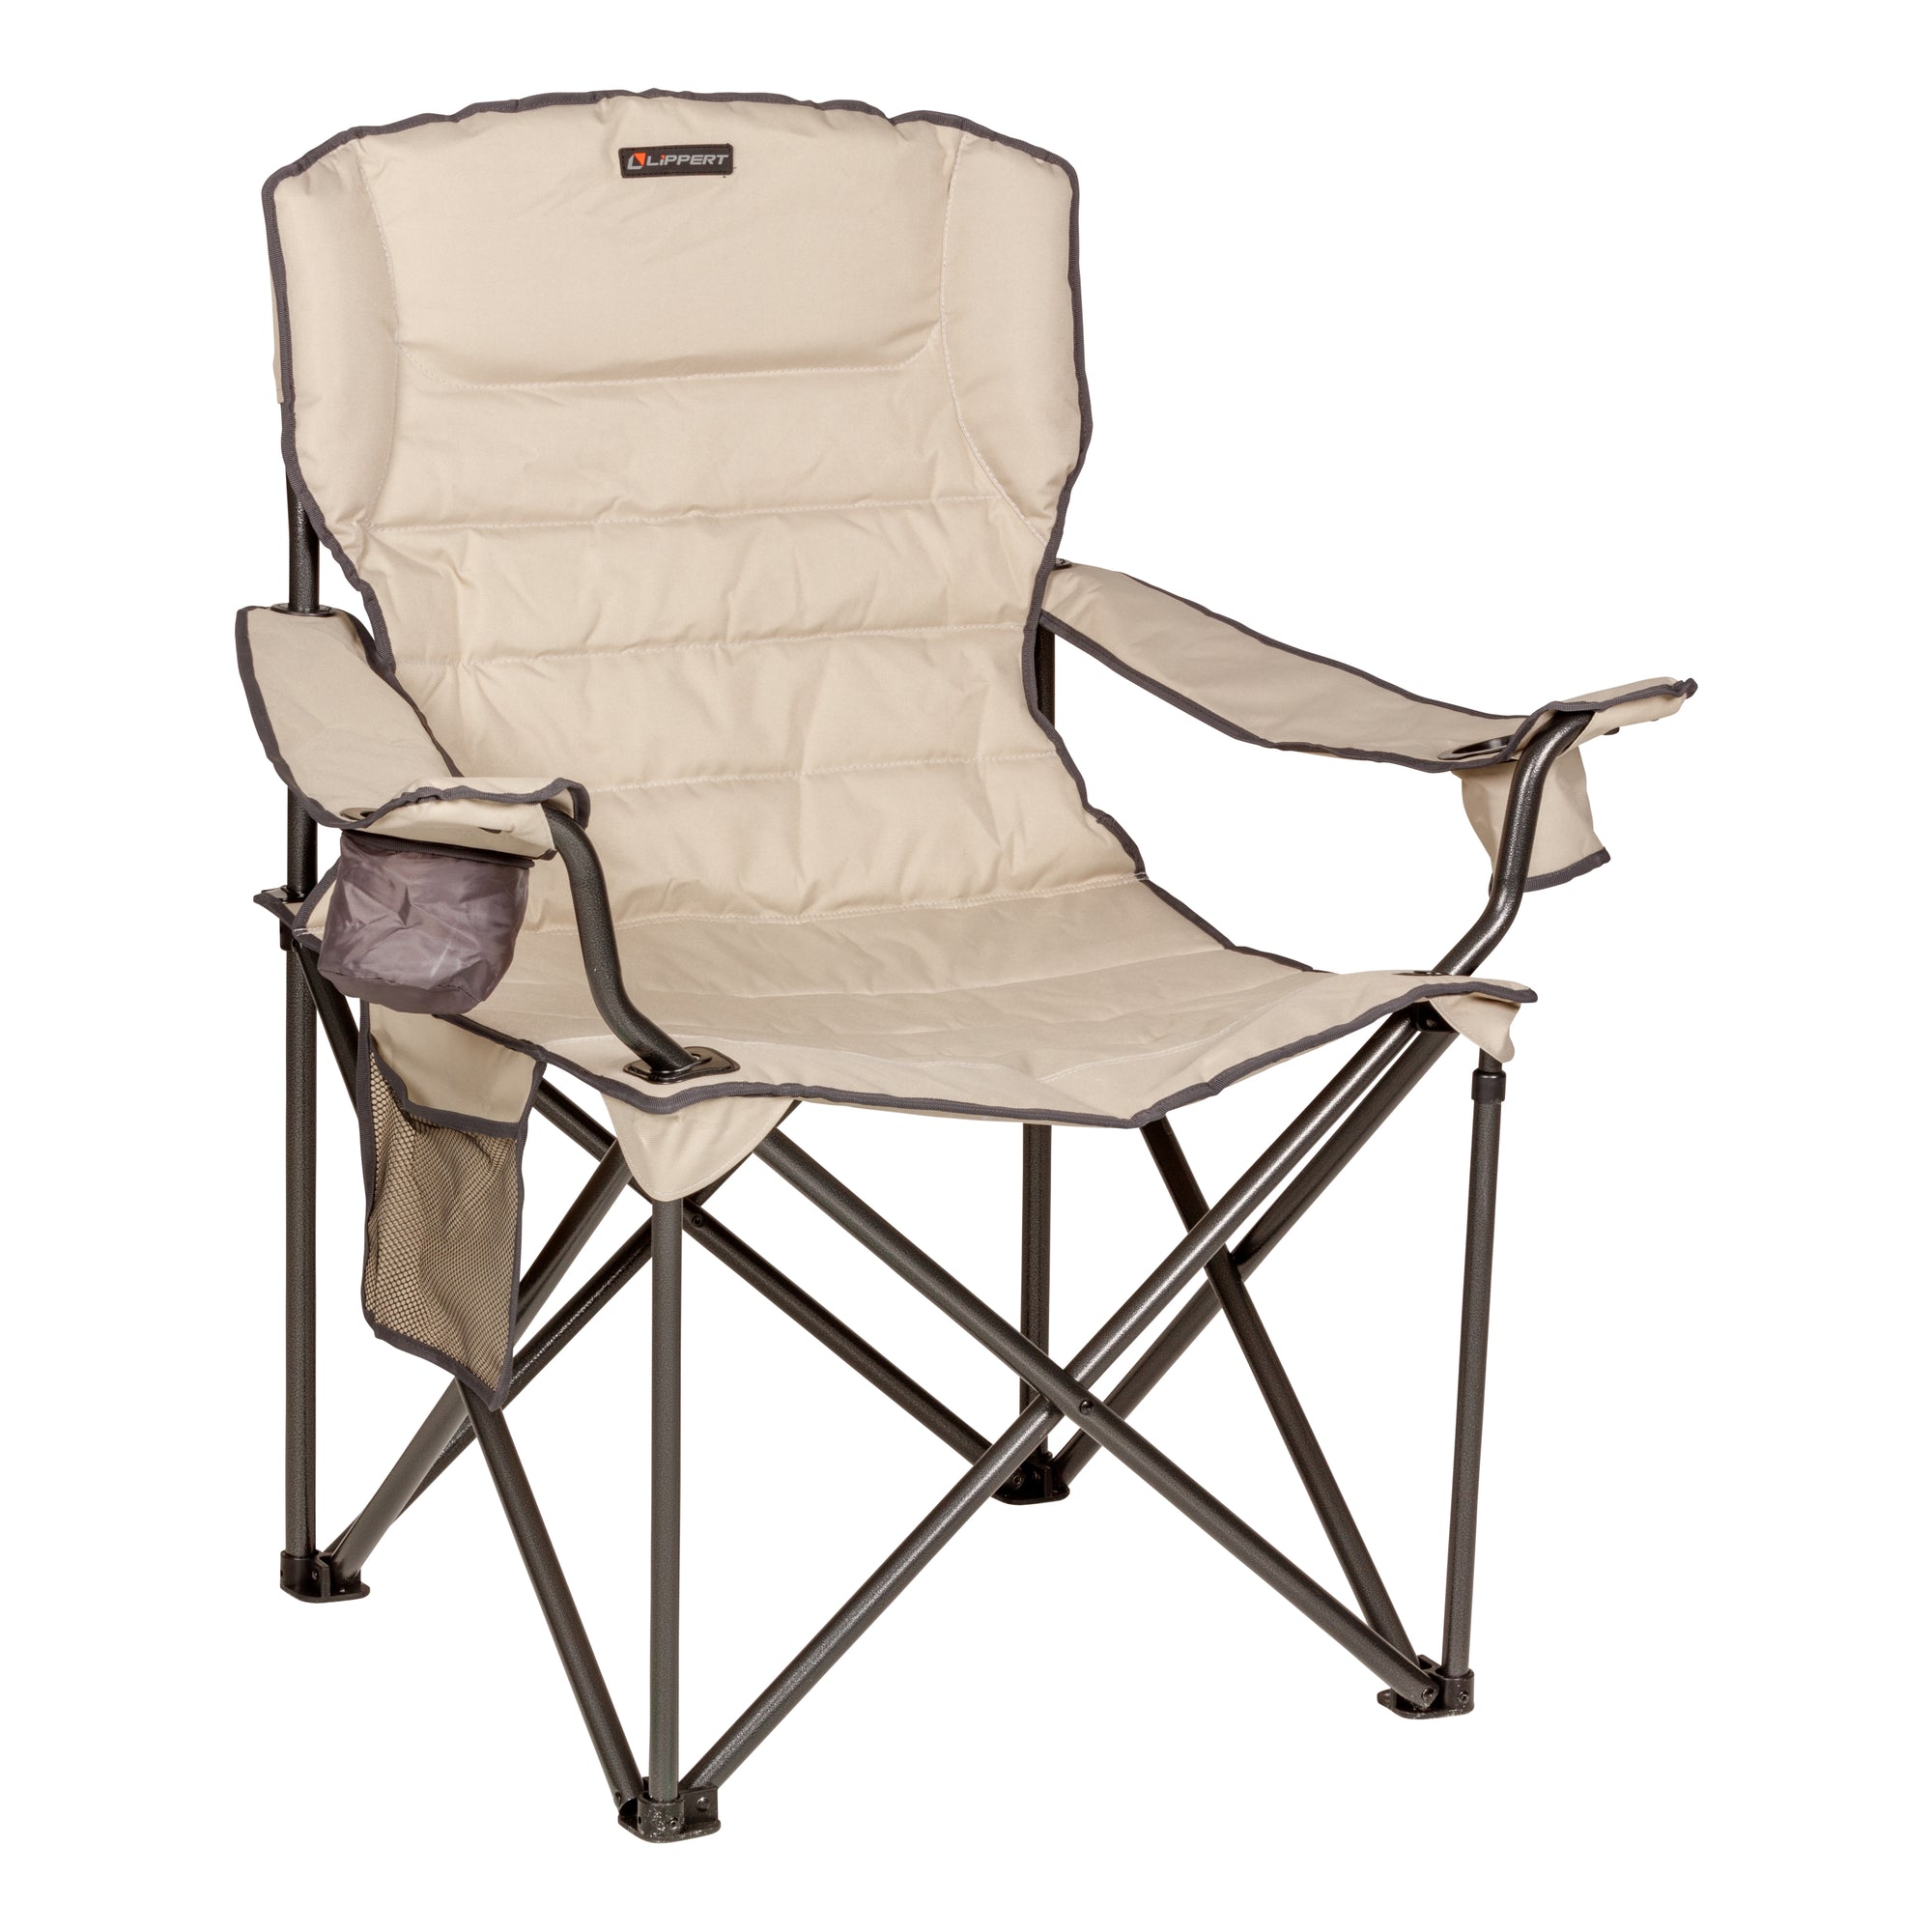 Lippert 2022114819 Campfire Deluxe Folding Chair - Sand